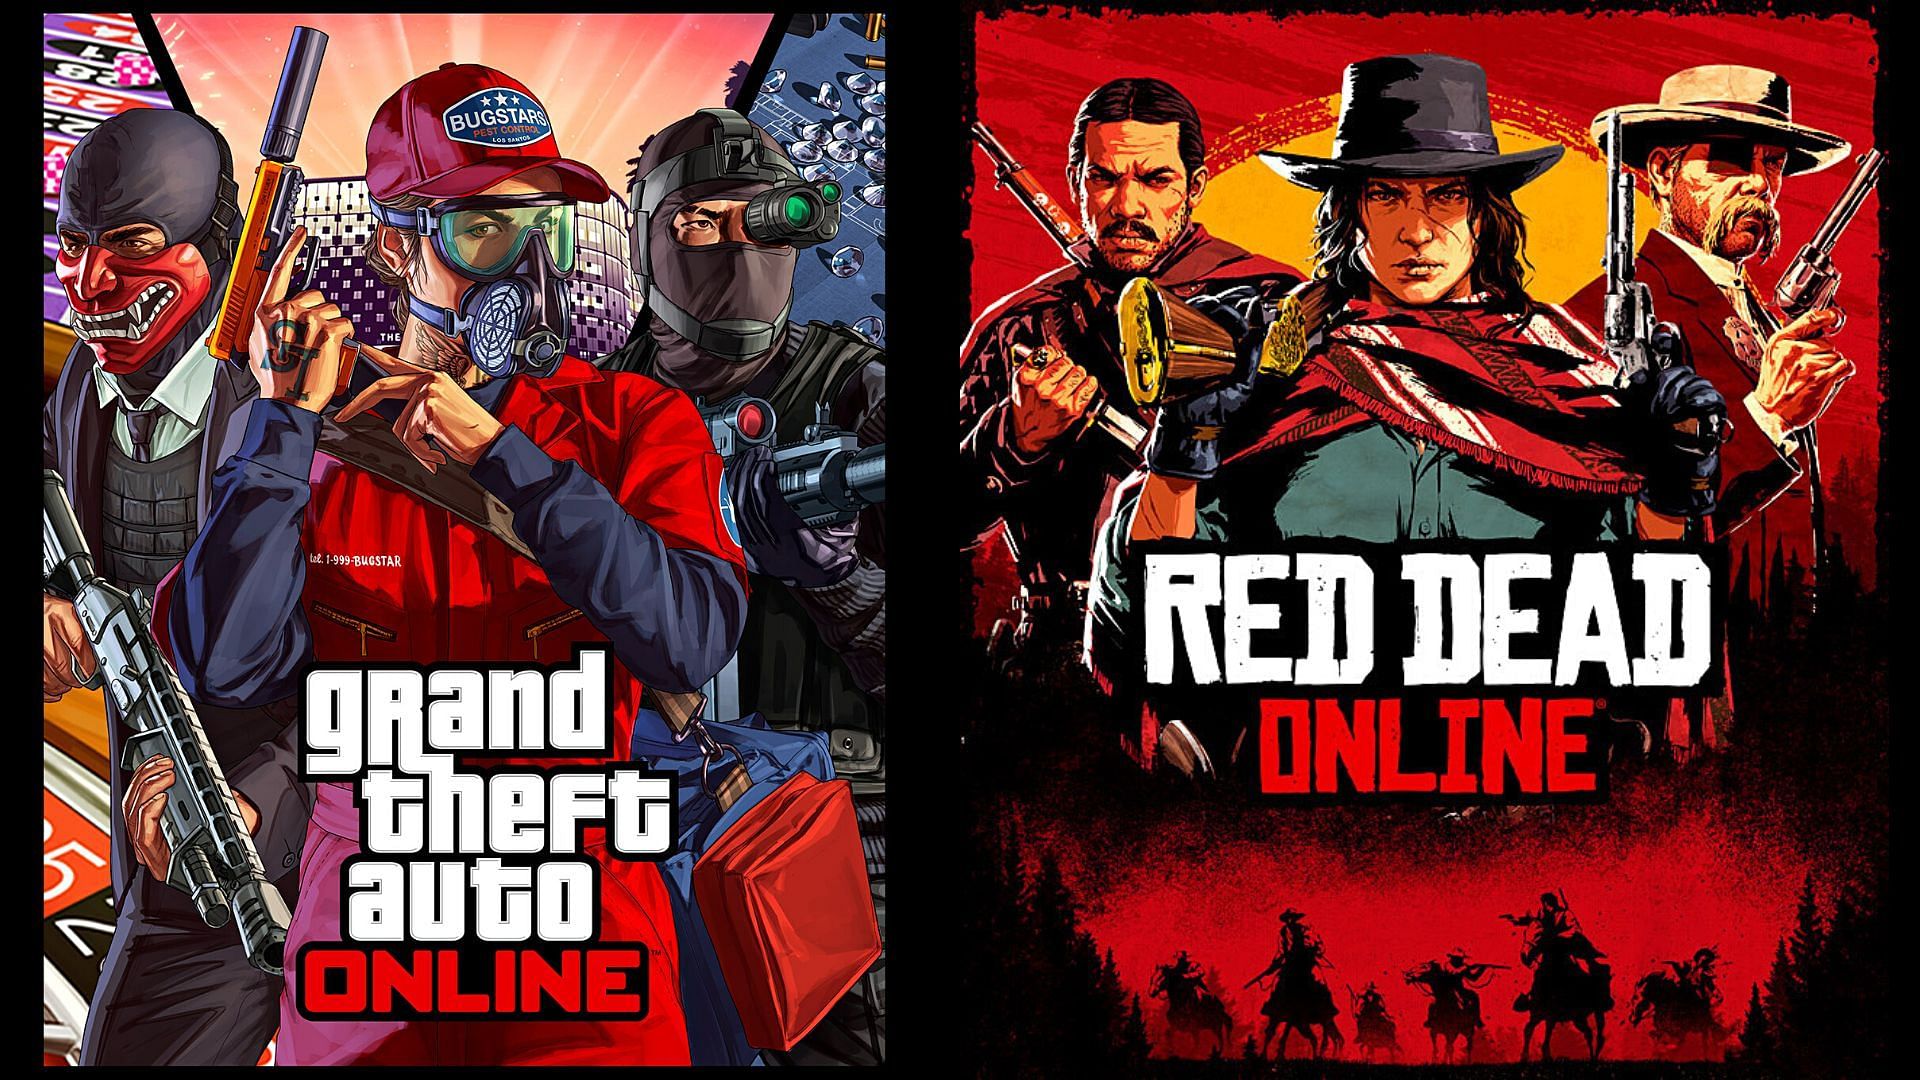 GTA Online and Red Dead रिडेम्पशन ऑनलाइन के बीच 5 प्रमुख अंतर